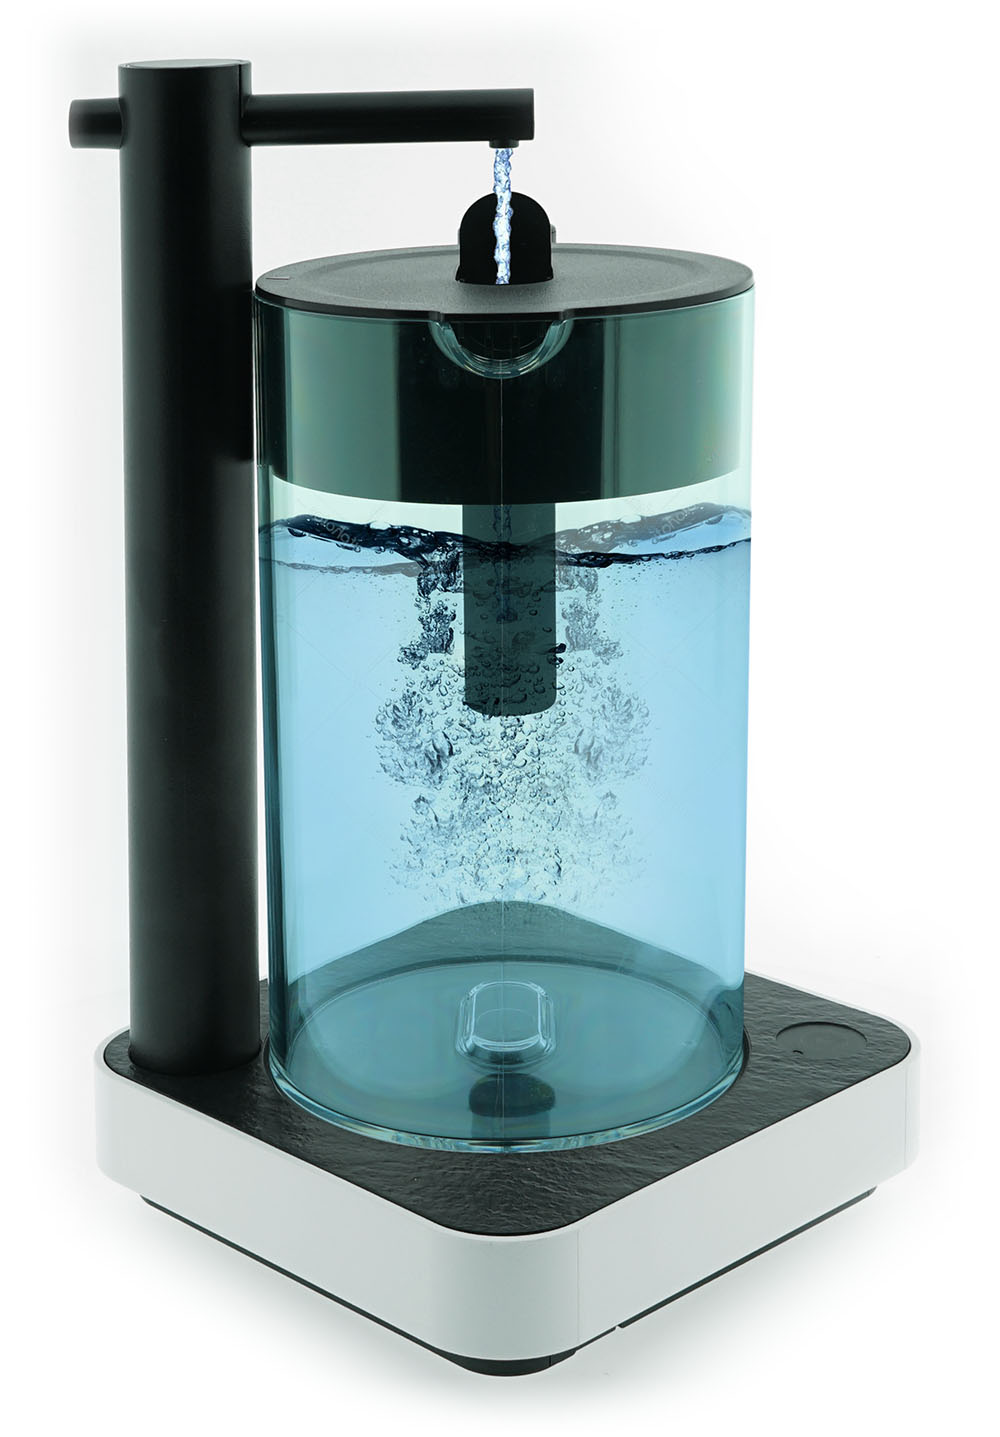 Wasserfilter BEM Robin All-in-One kompakte Umkehrosmose Wasserfilteranlage für die Küche, Trinkwasserfilter